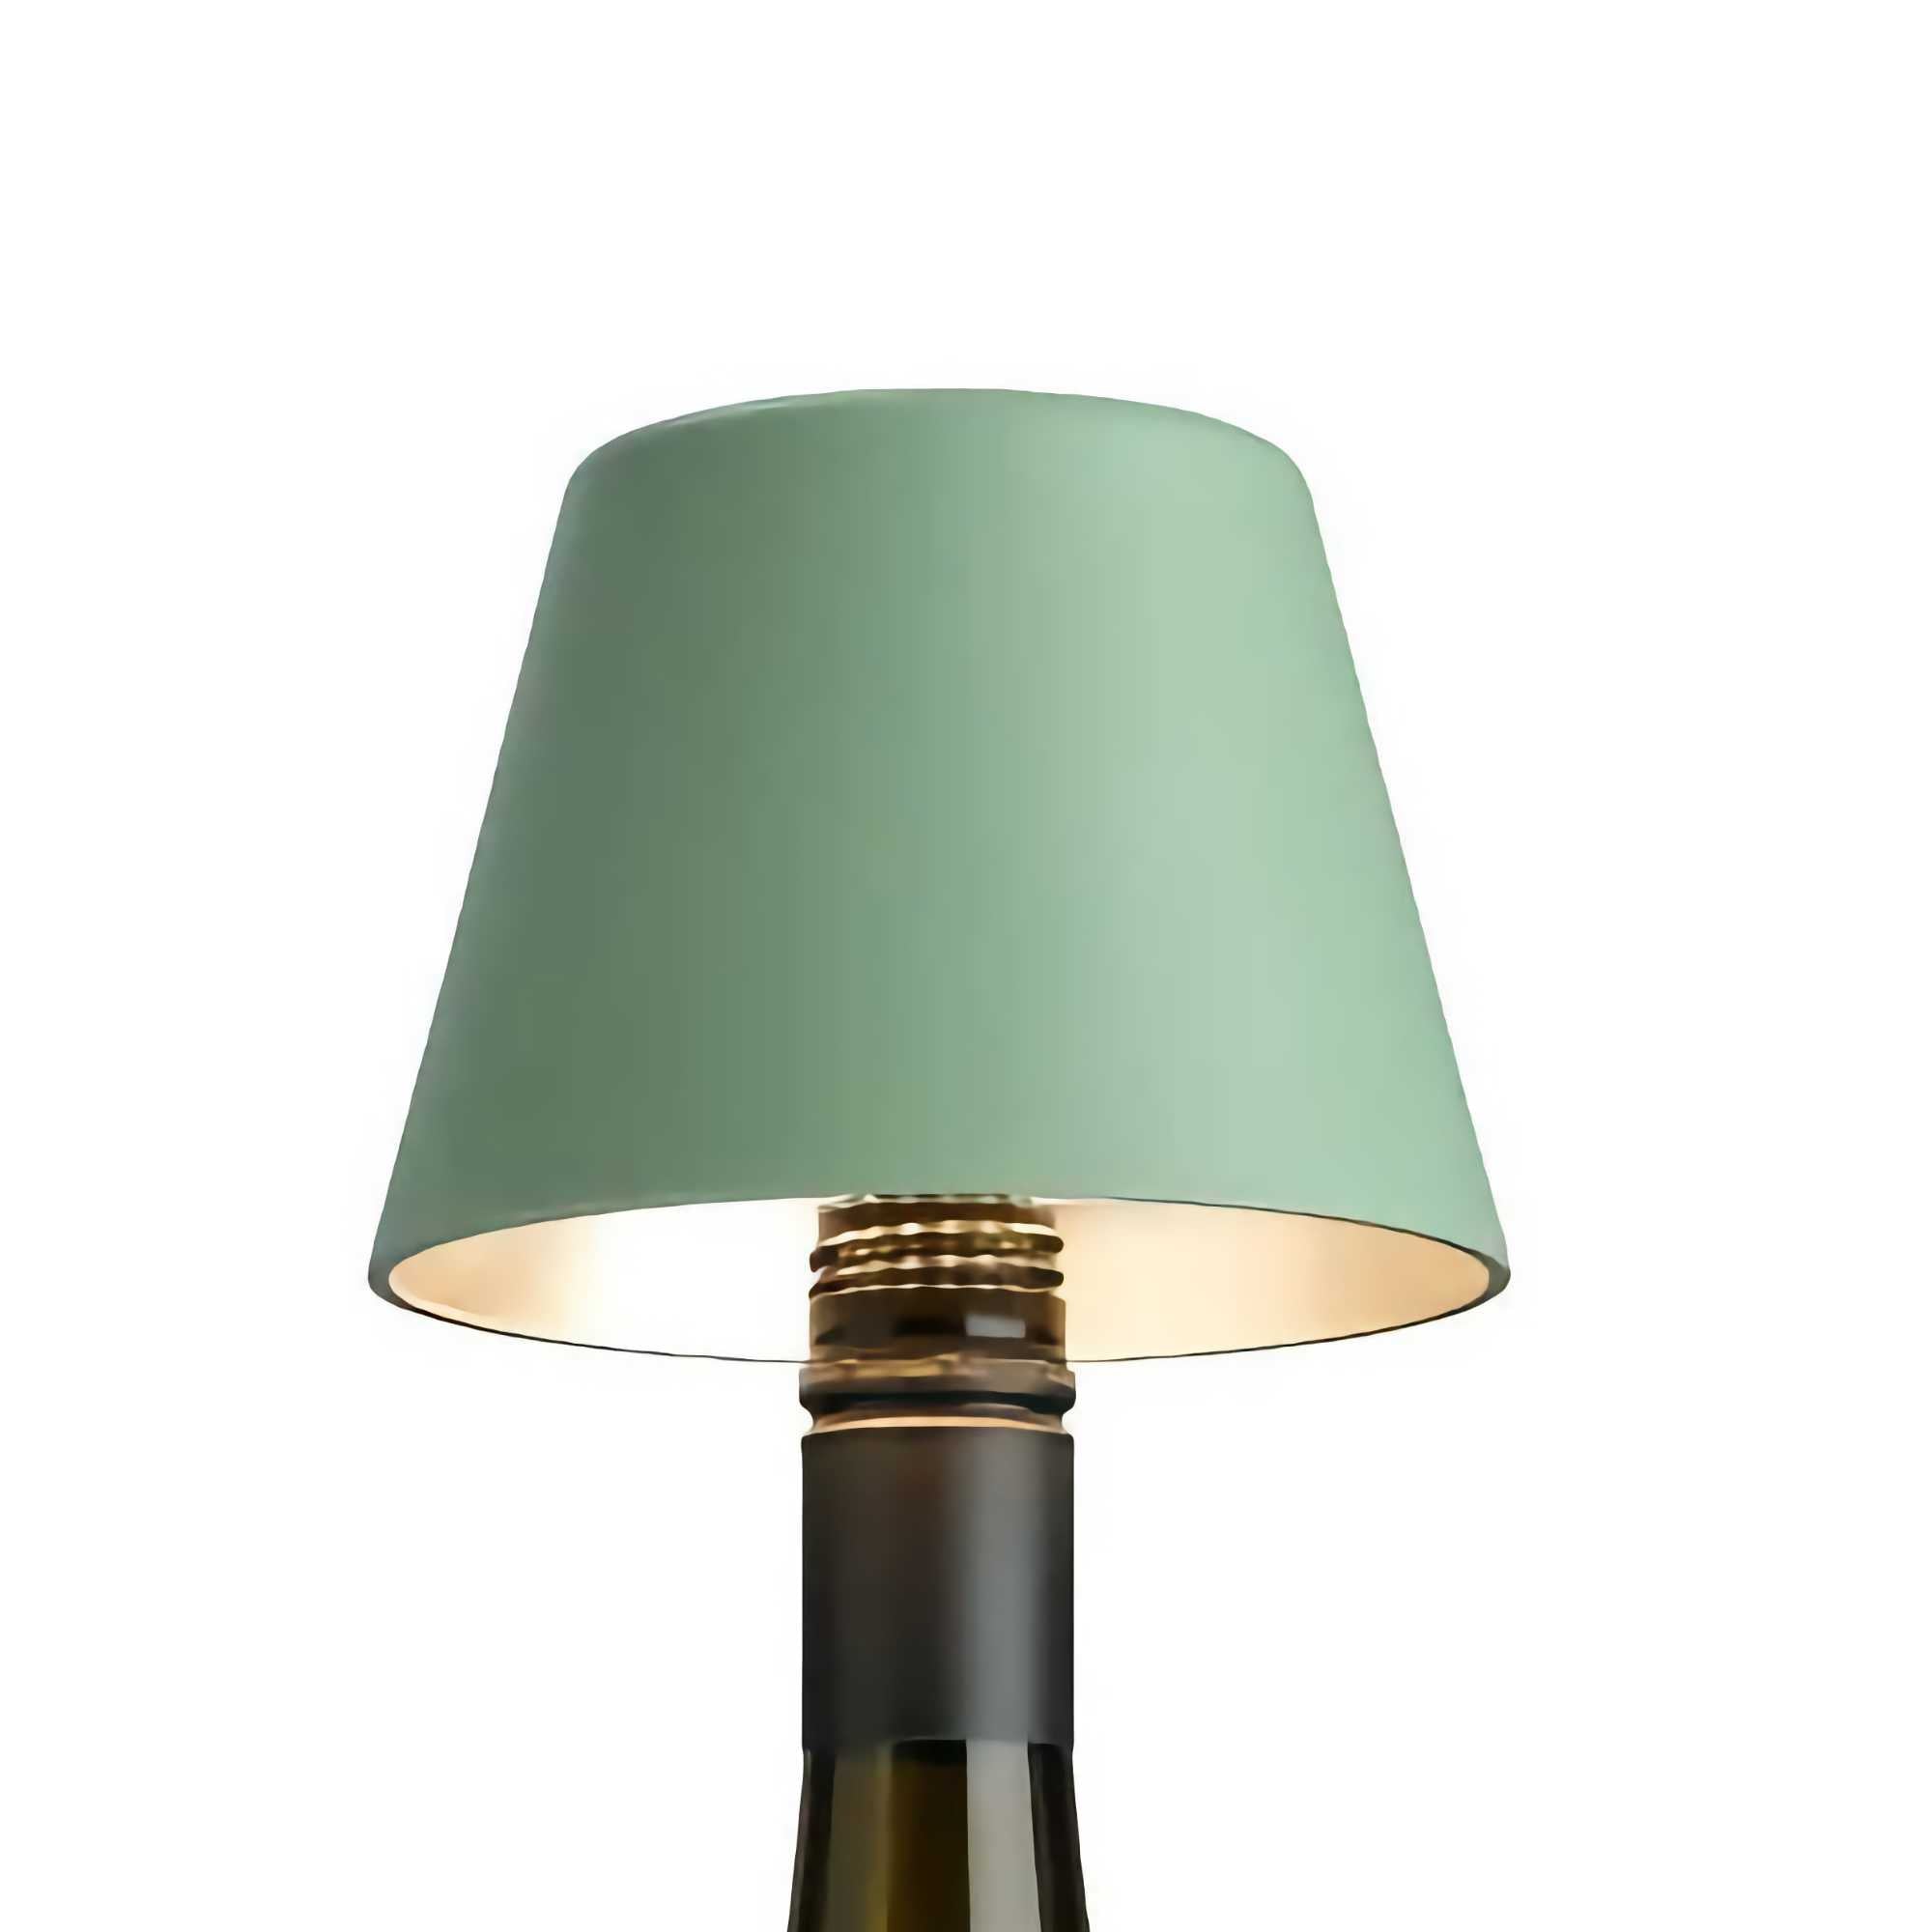 Sompex TOP 2.0 bottle light, olive green